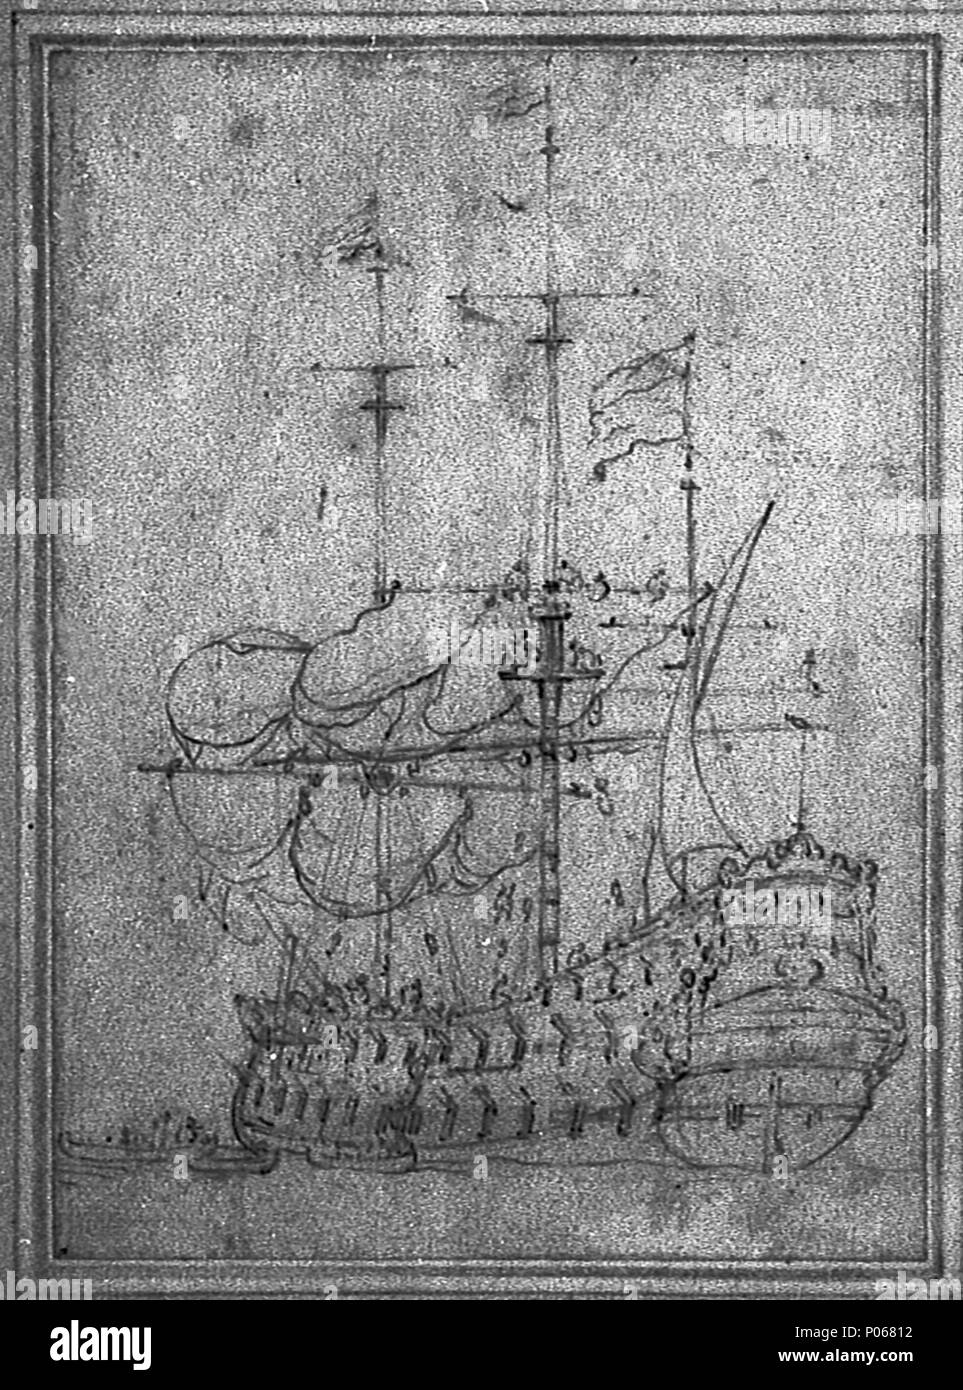 Inglés: Una insignia holandés furling las velas este puerto vista de cuarto  de un barco holandés con botes junto a un desplazamiento de imagen, tomada  desde la misma como PAE5245 original.